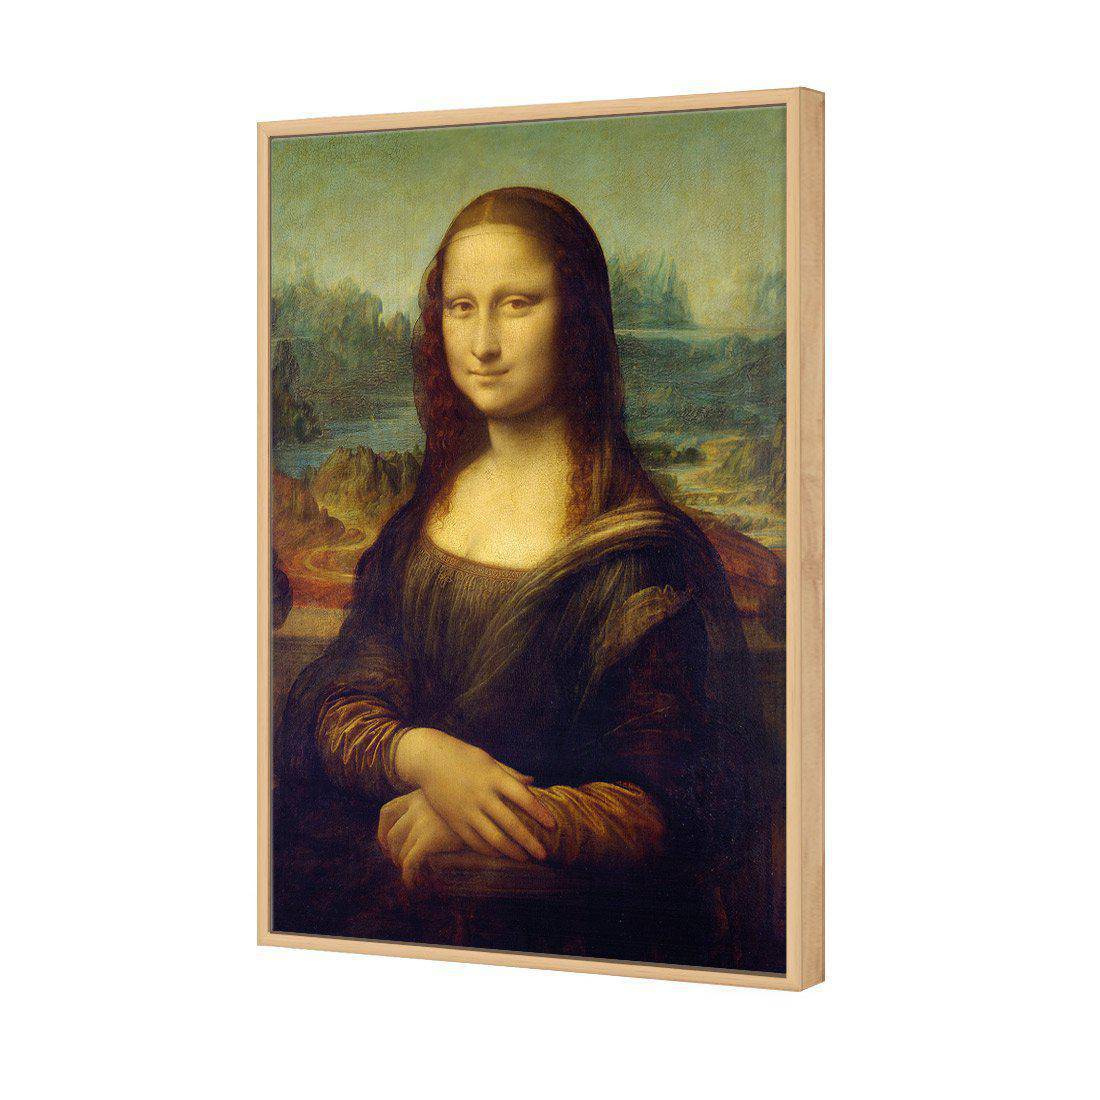 Mona Lisa - Da Vinci Canvas Art-Canvas-Wall Art Designs-45x30cm-Canvas - Oak Frame-Wall Art Designs